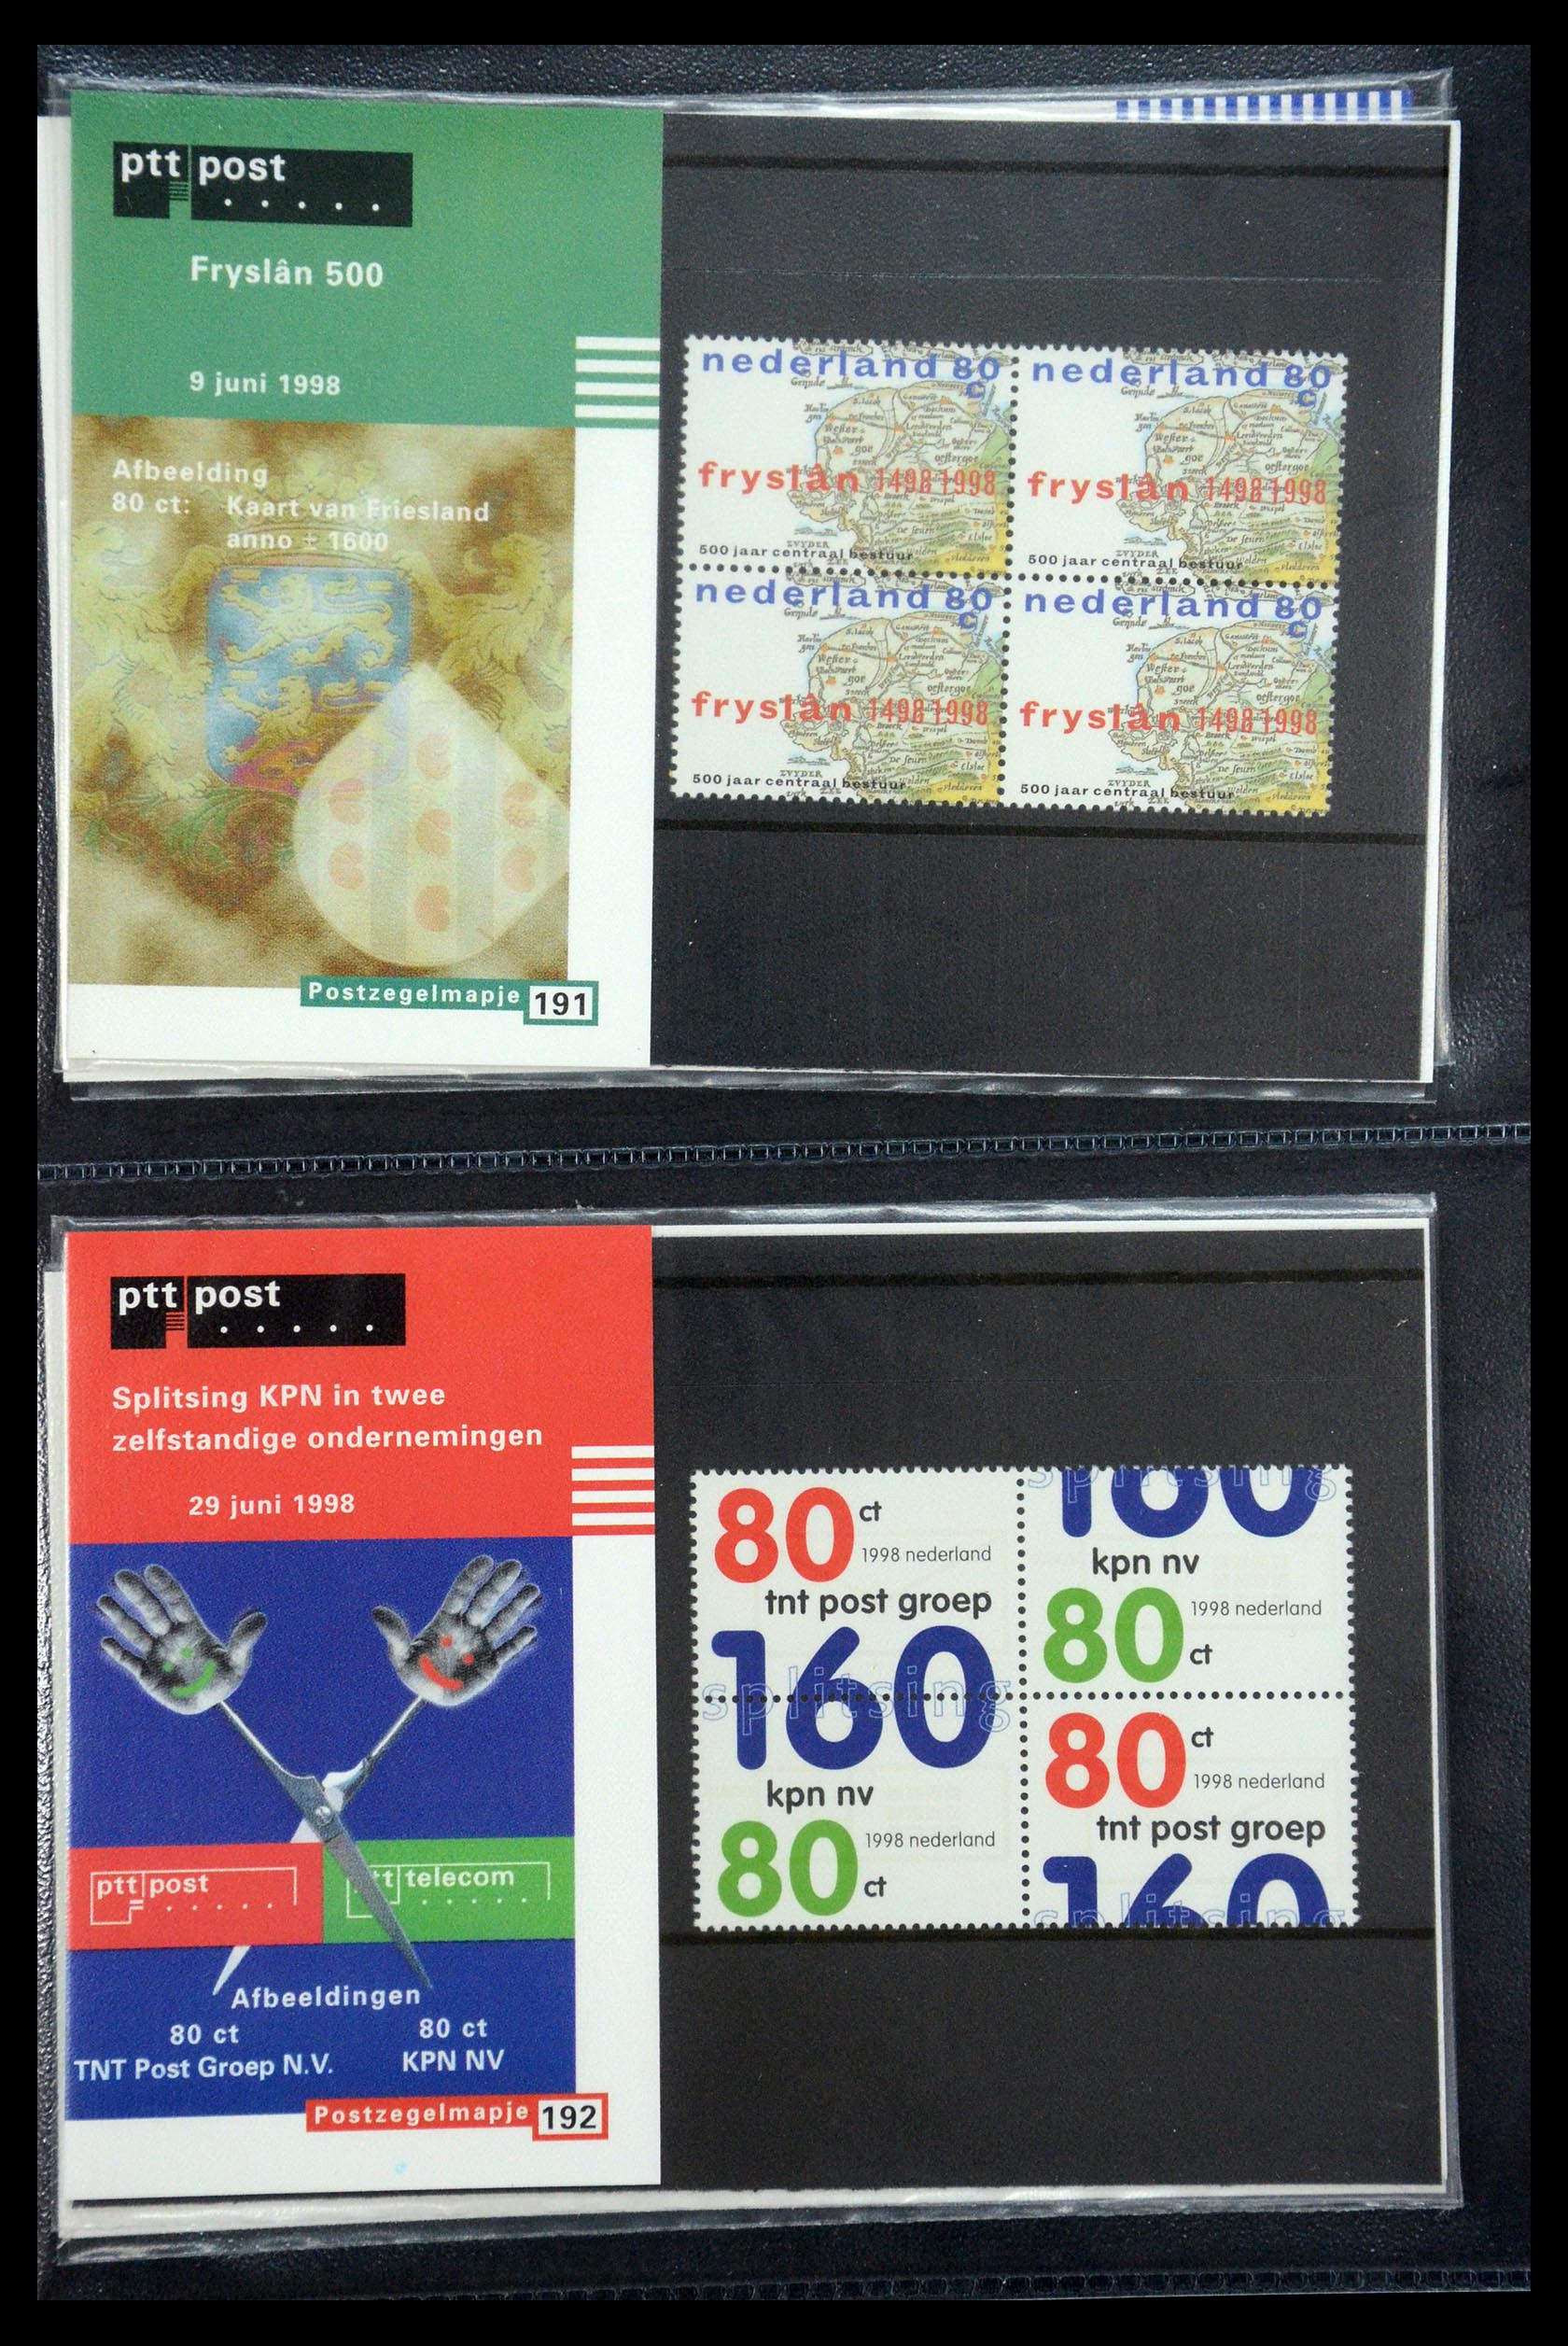 35187 098 - Stamp Collection 35187 Netherlands PTT presentation packs 1982-2019!